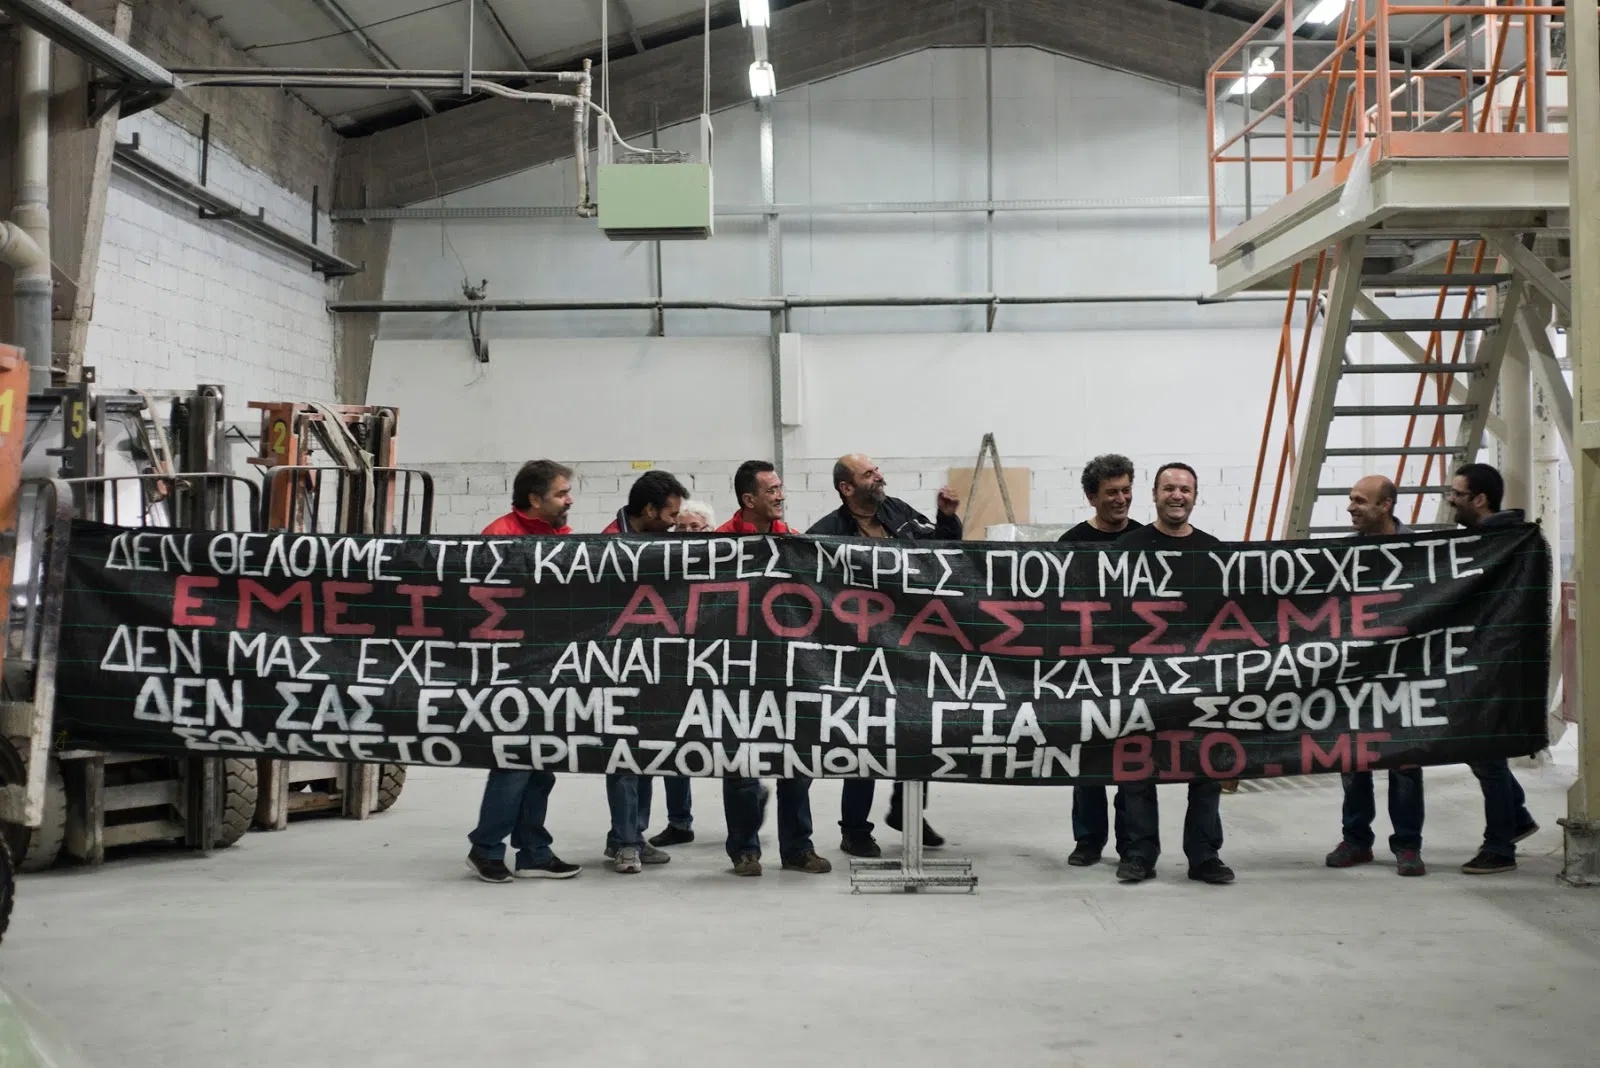 ΕΚΤΑΚΤΟ – Η ΔΕΗ έκοψε το ρεύμα στο αυτοδιαχειριζόμενο εργοστάσιο της ΒΙΟΜΕ